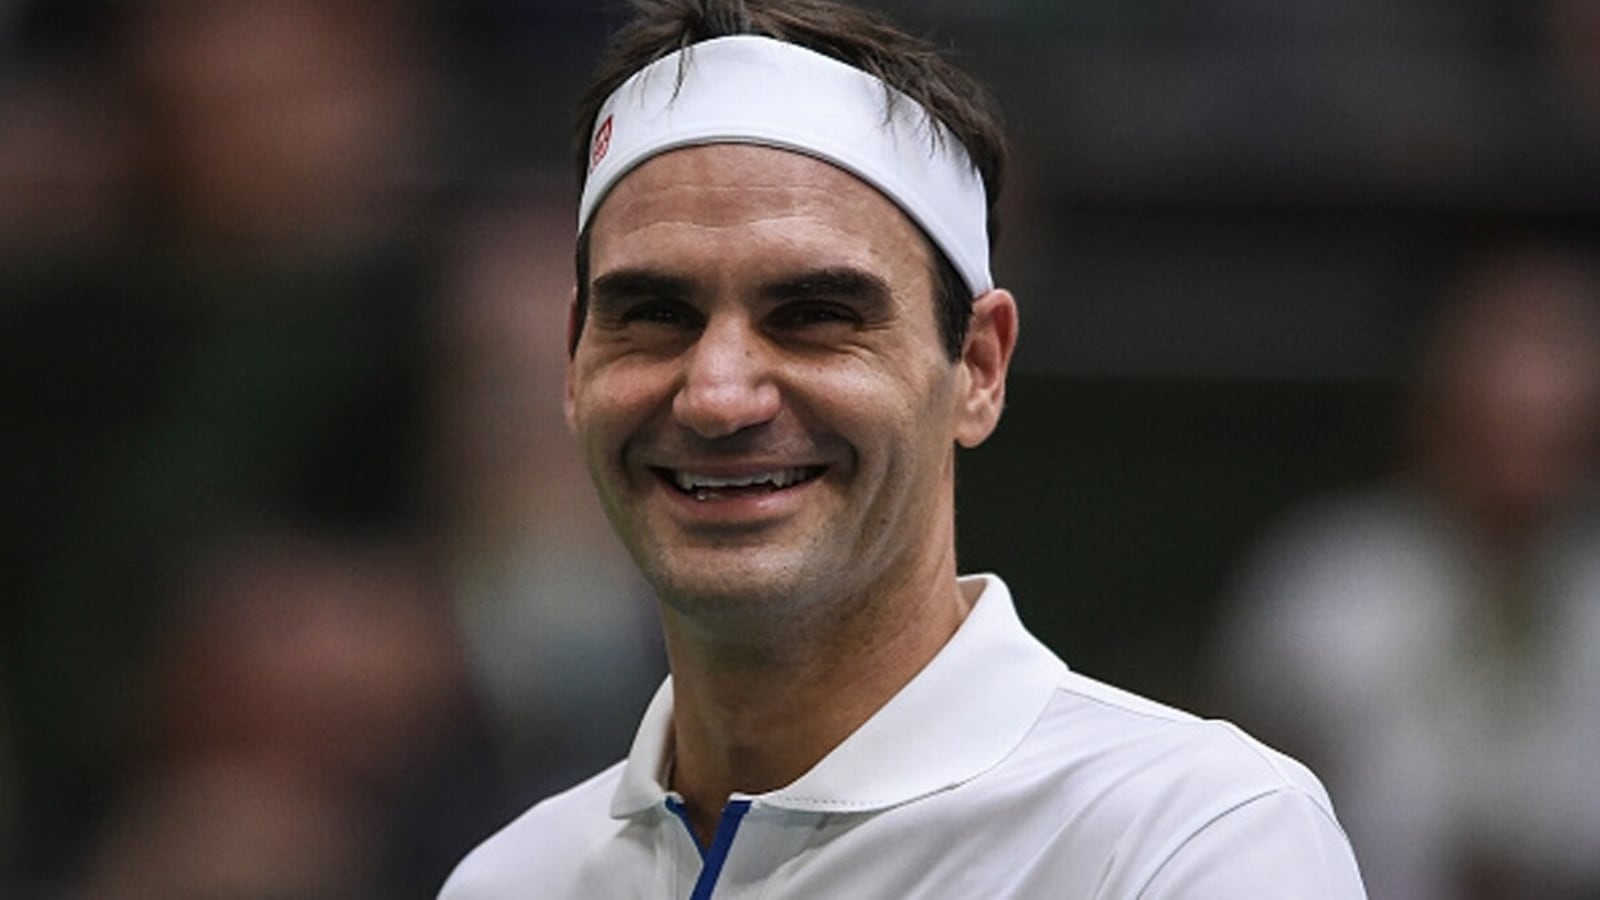 Roger Federer plans tournament return at Swiss Indoors in Basel in October